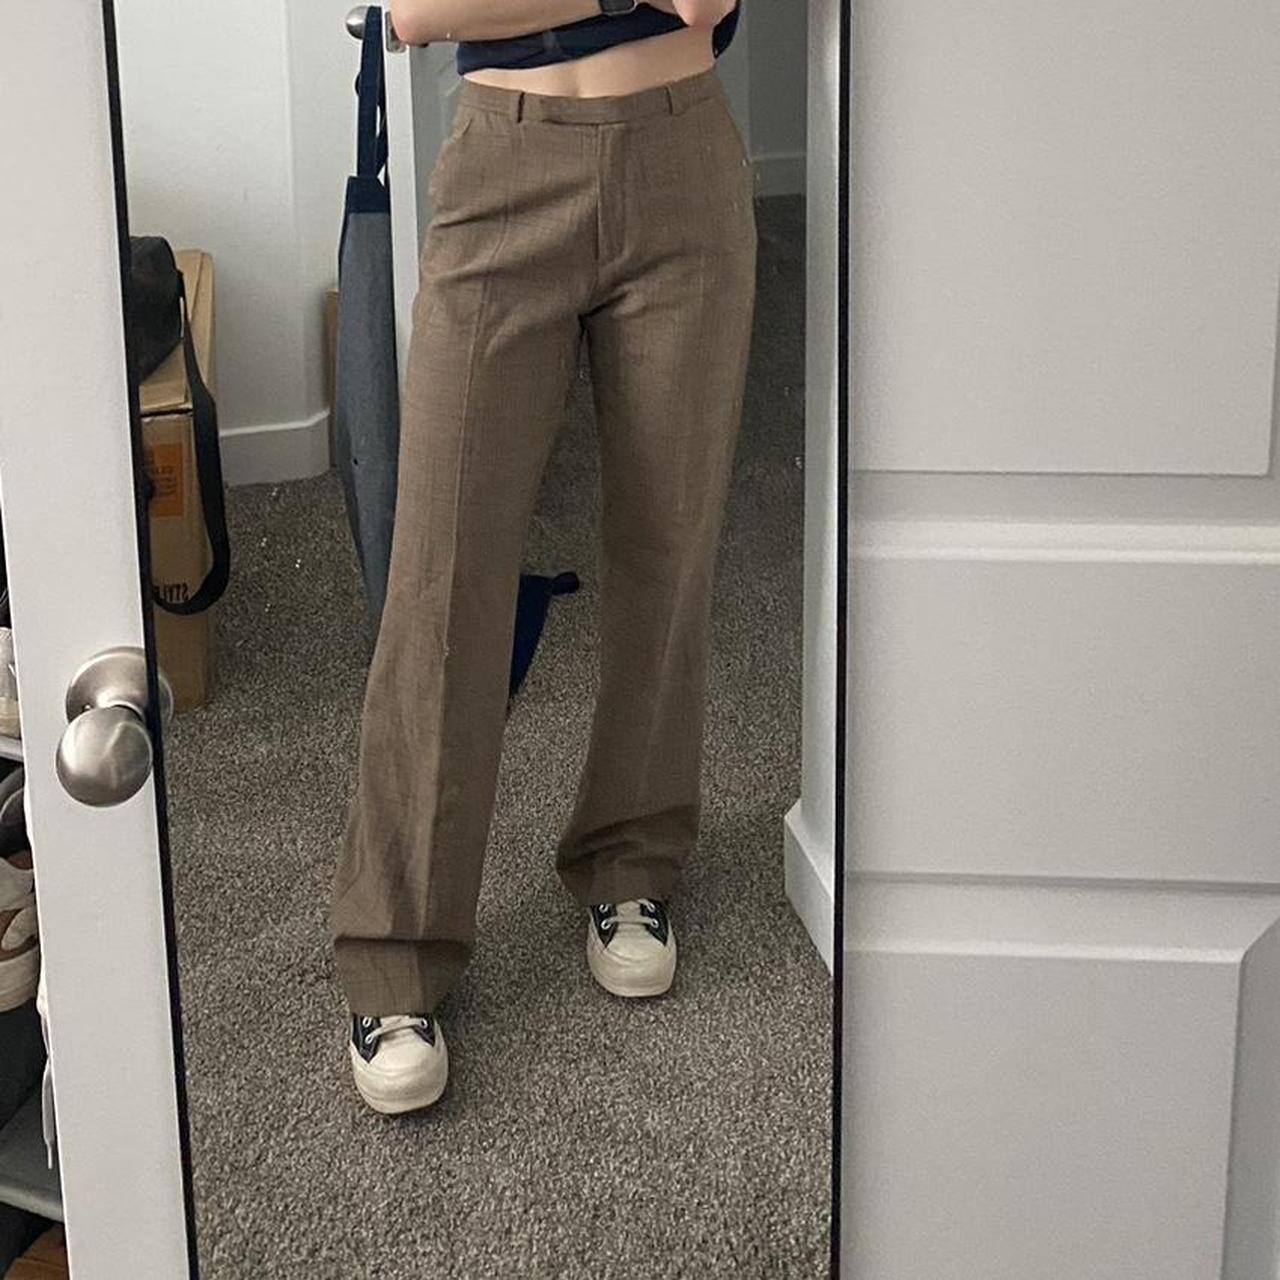 Vintage Laura clement dress pants. Super cute worn - Depop